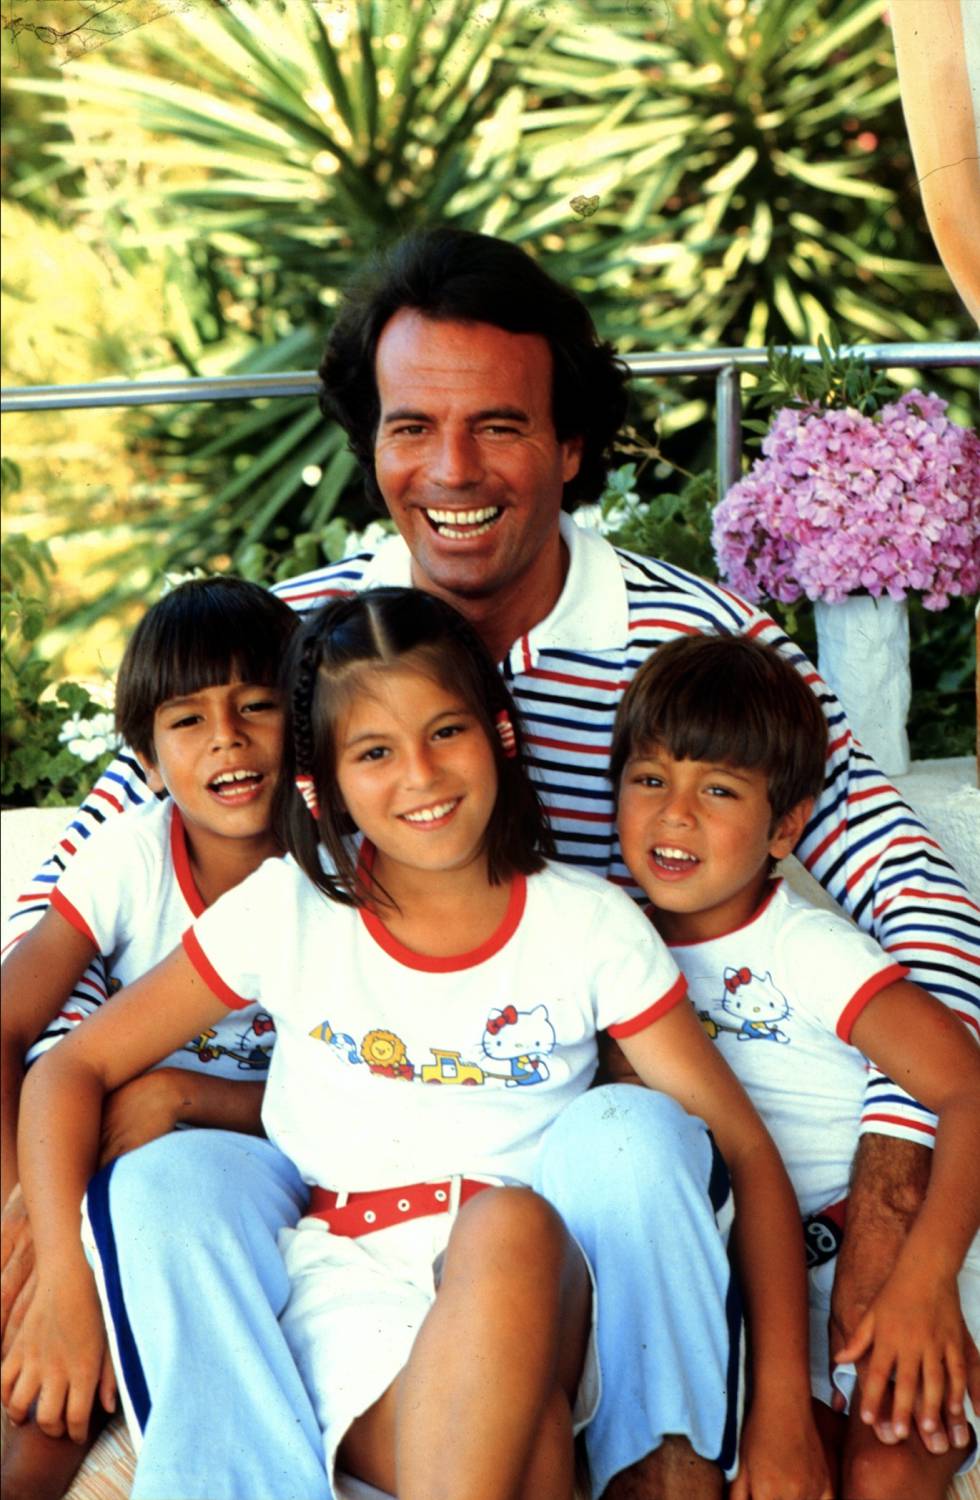 Julio con sus hijos Julio José, Chabeli y Enrique en Miami en 1981. Julio tenía entonces 38 años y Enrique, 6.